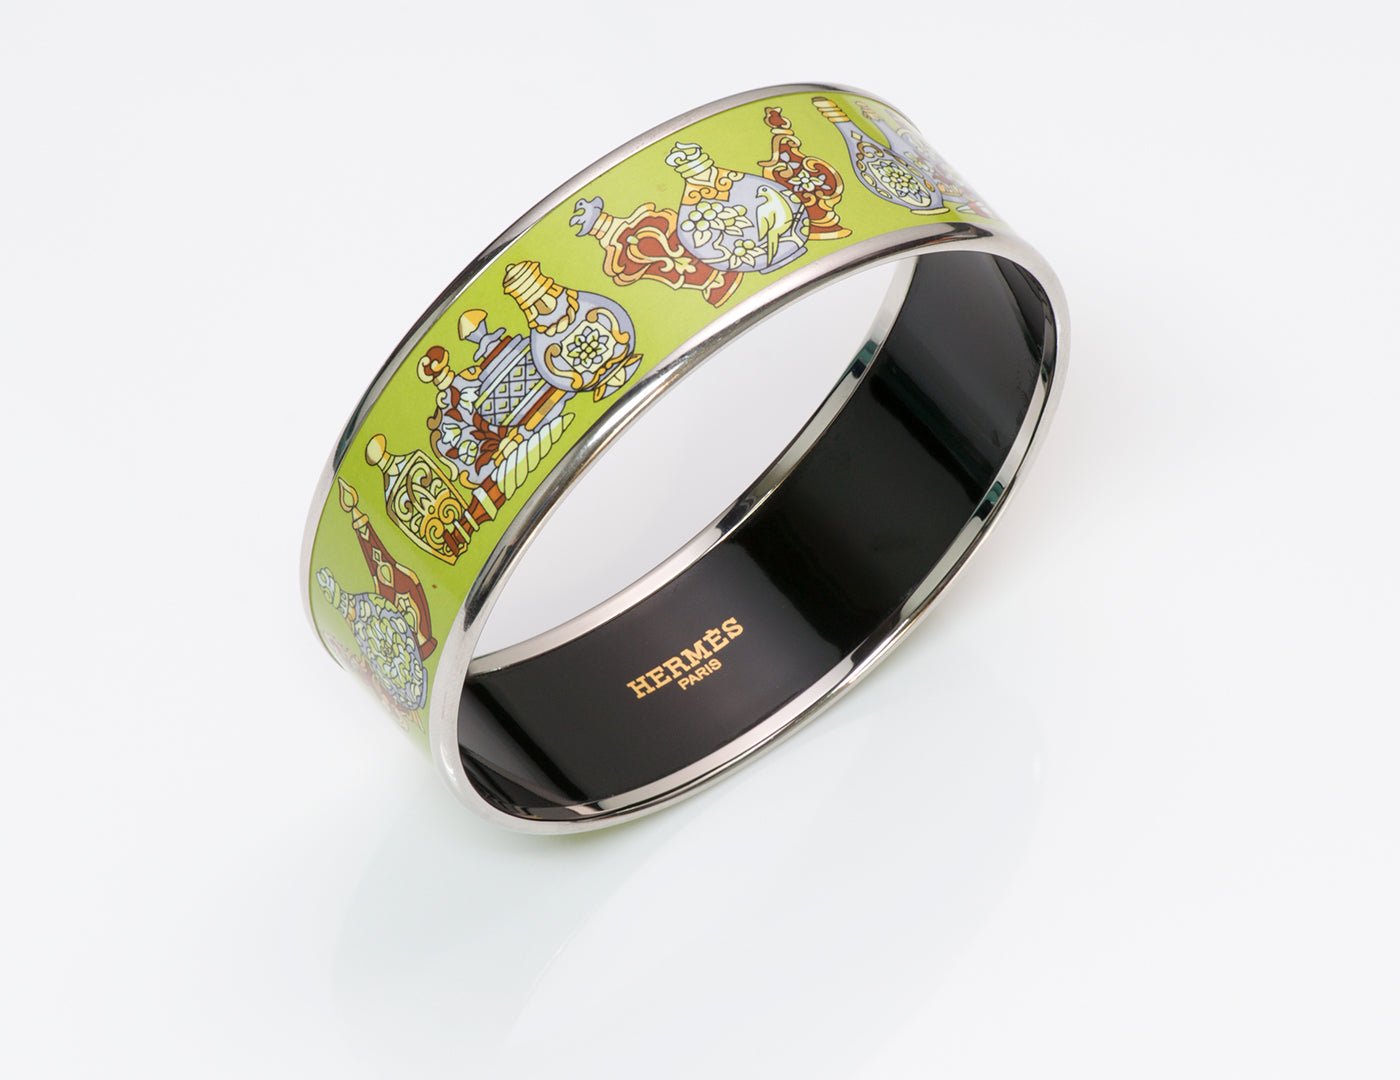 Hermès Enamel Bangle Bracelet